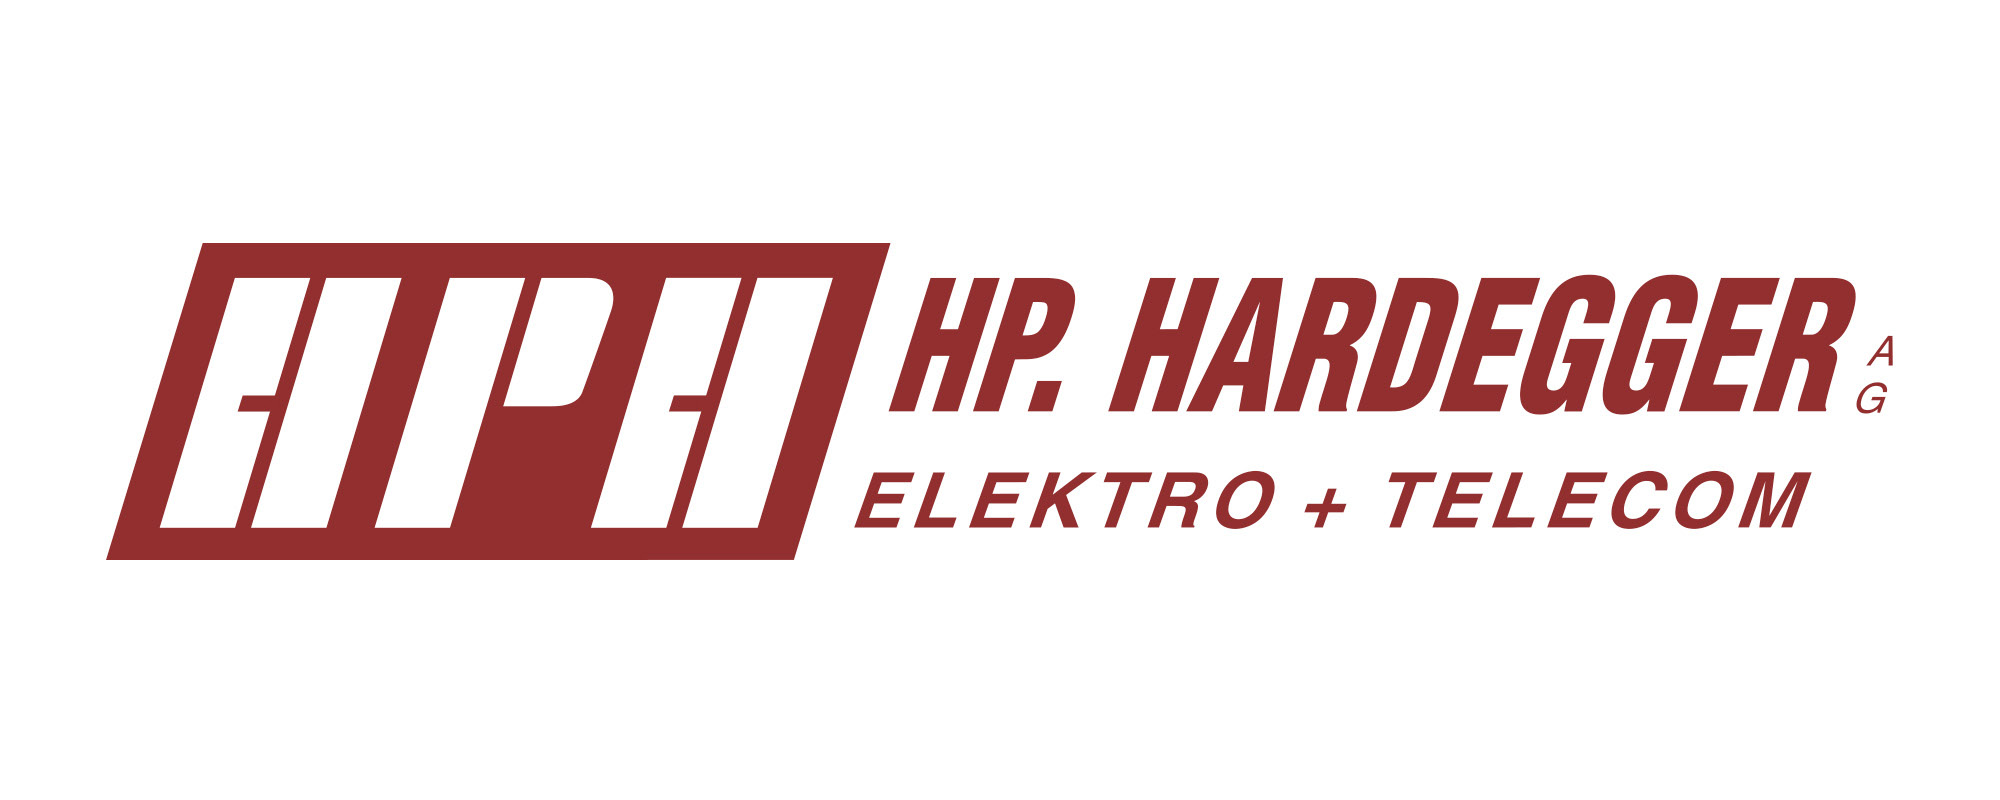 HPH Hardegger